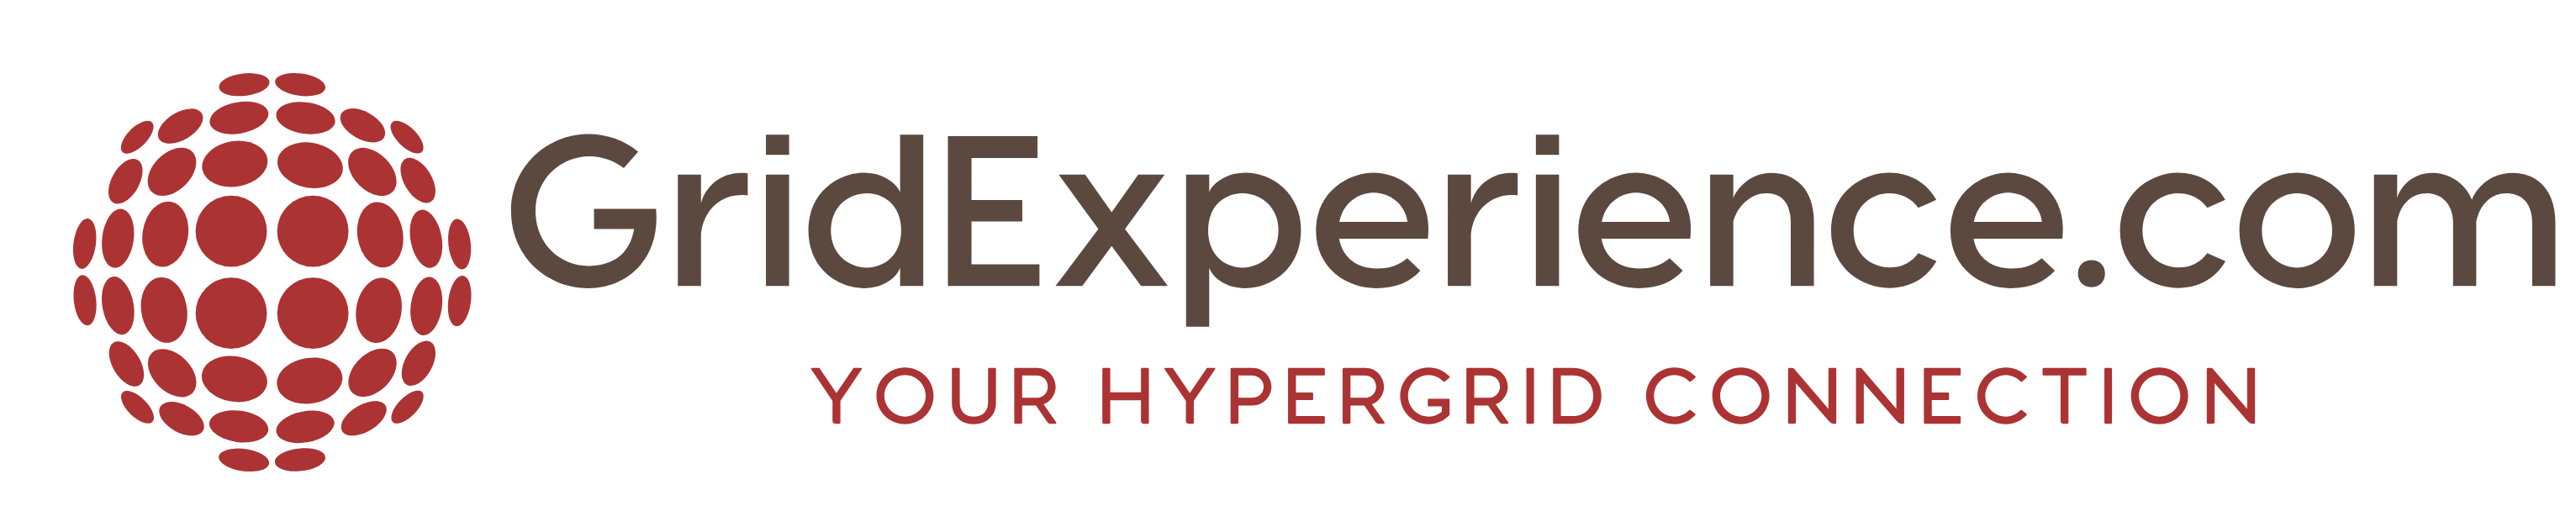 GridExperience.com Logo